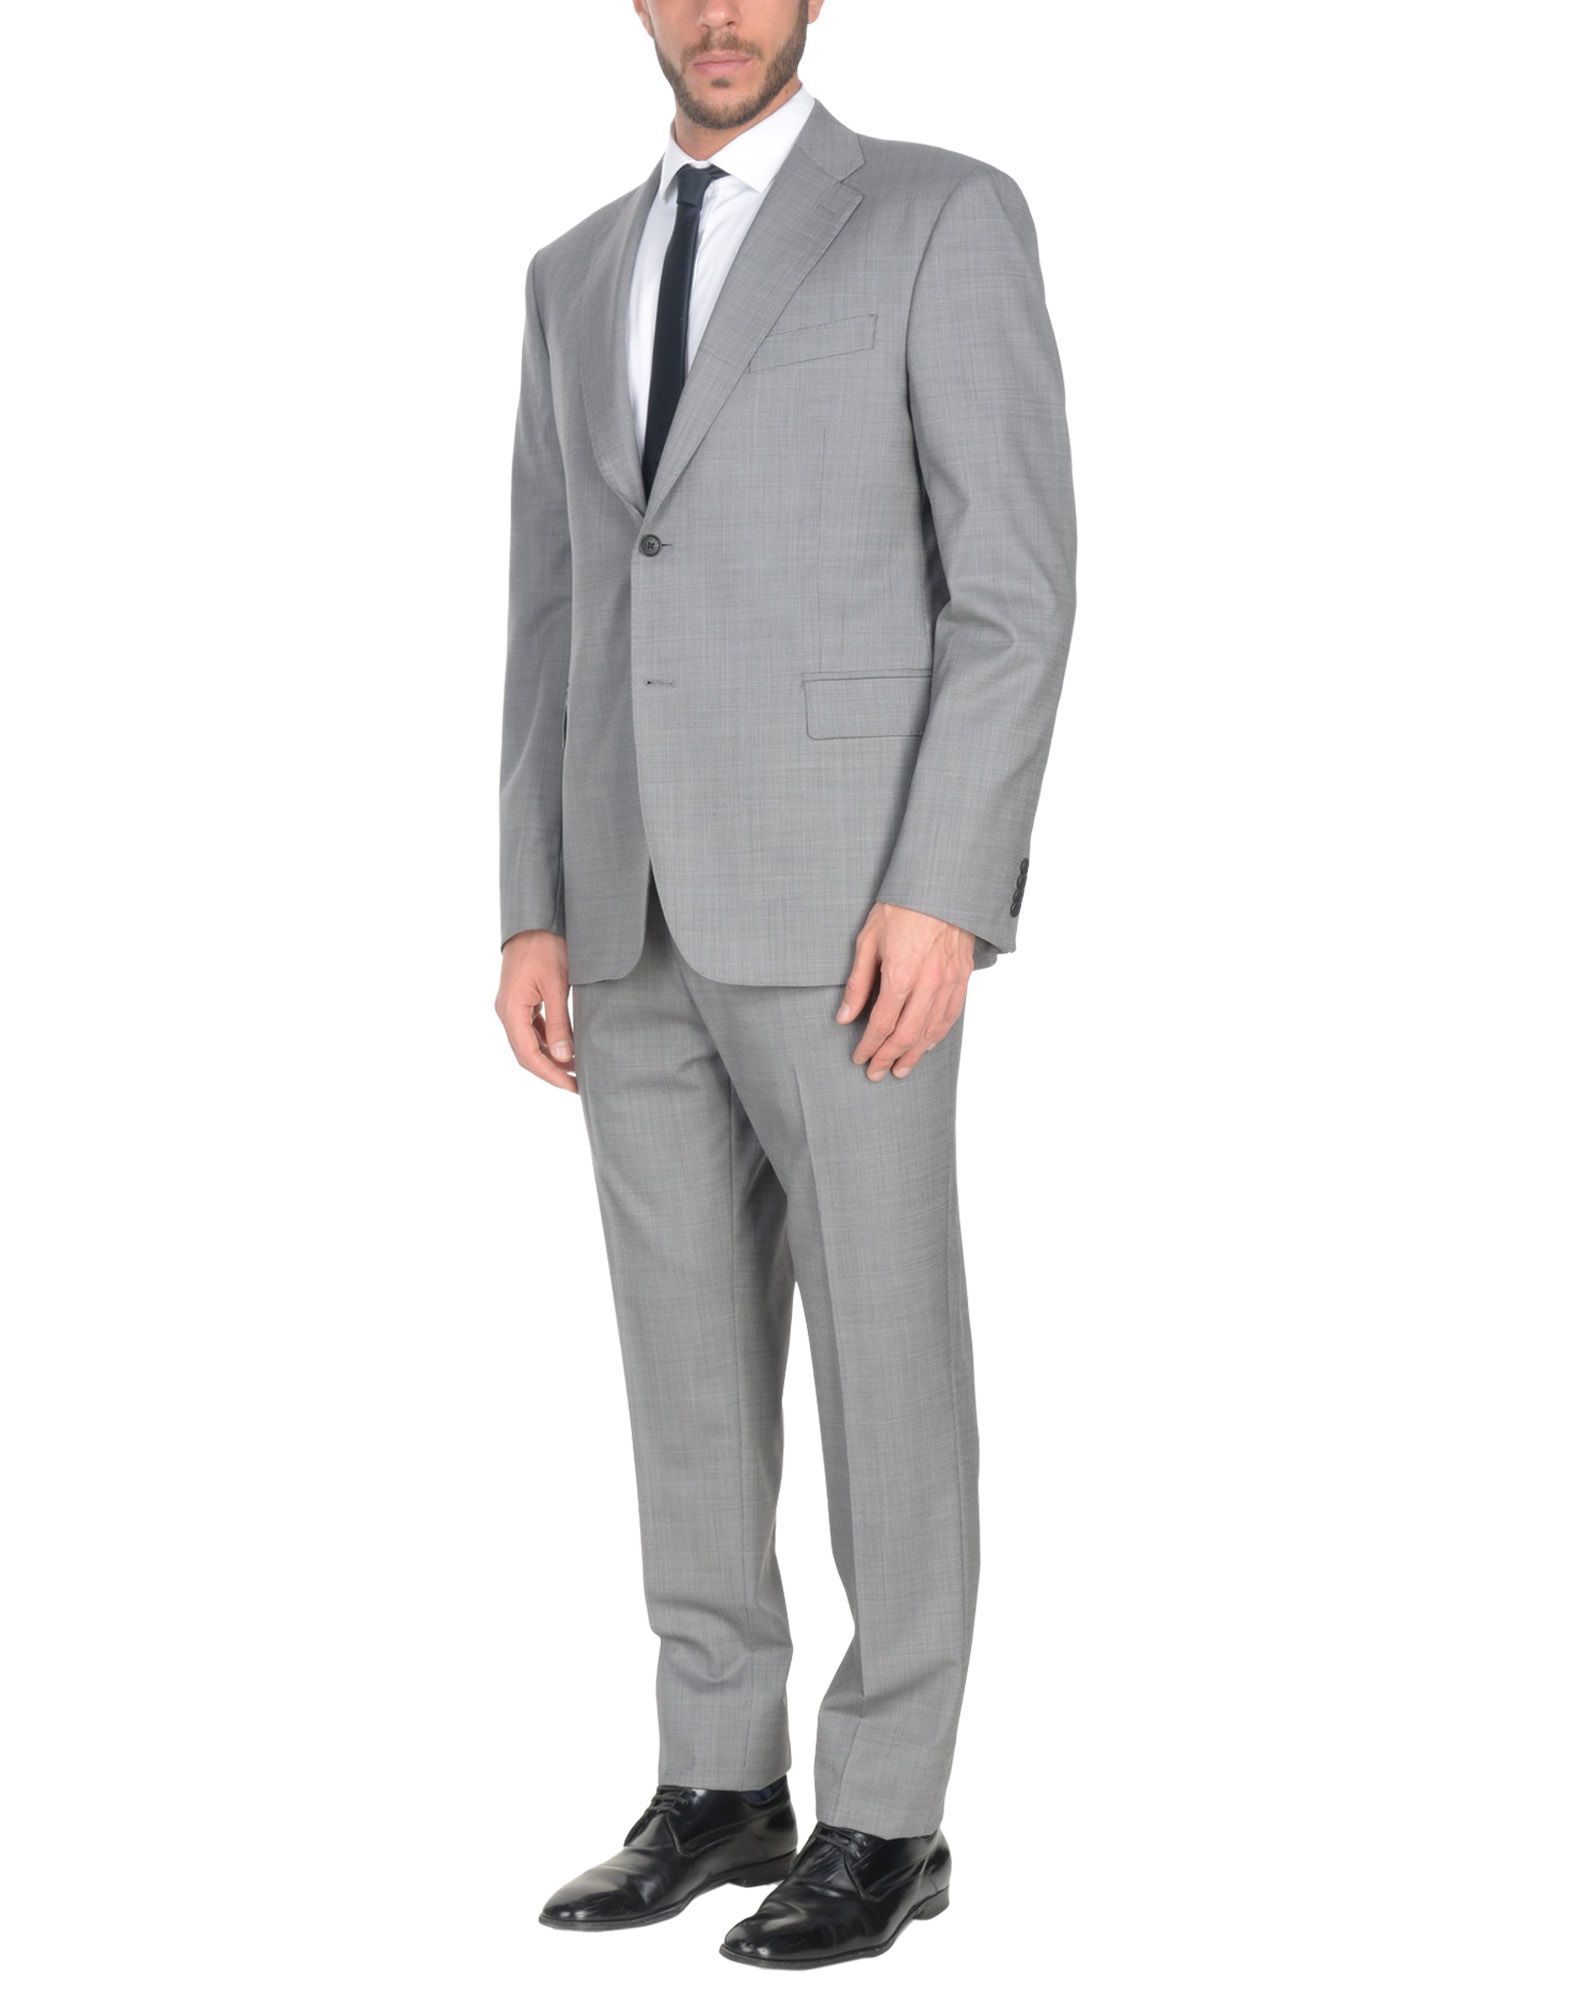 PIERRE BALMAIN Suits,49360412TJ 7